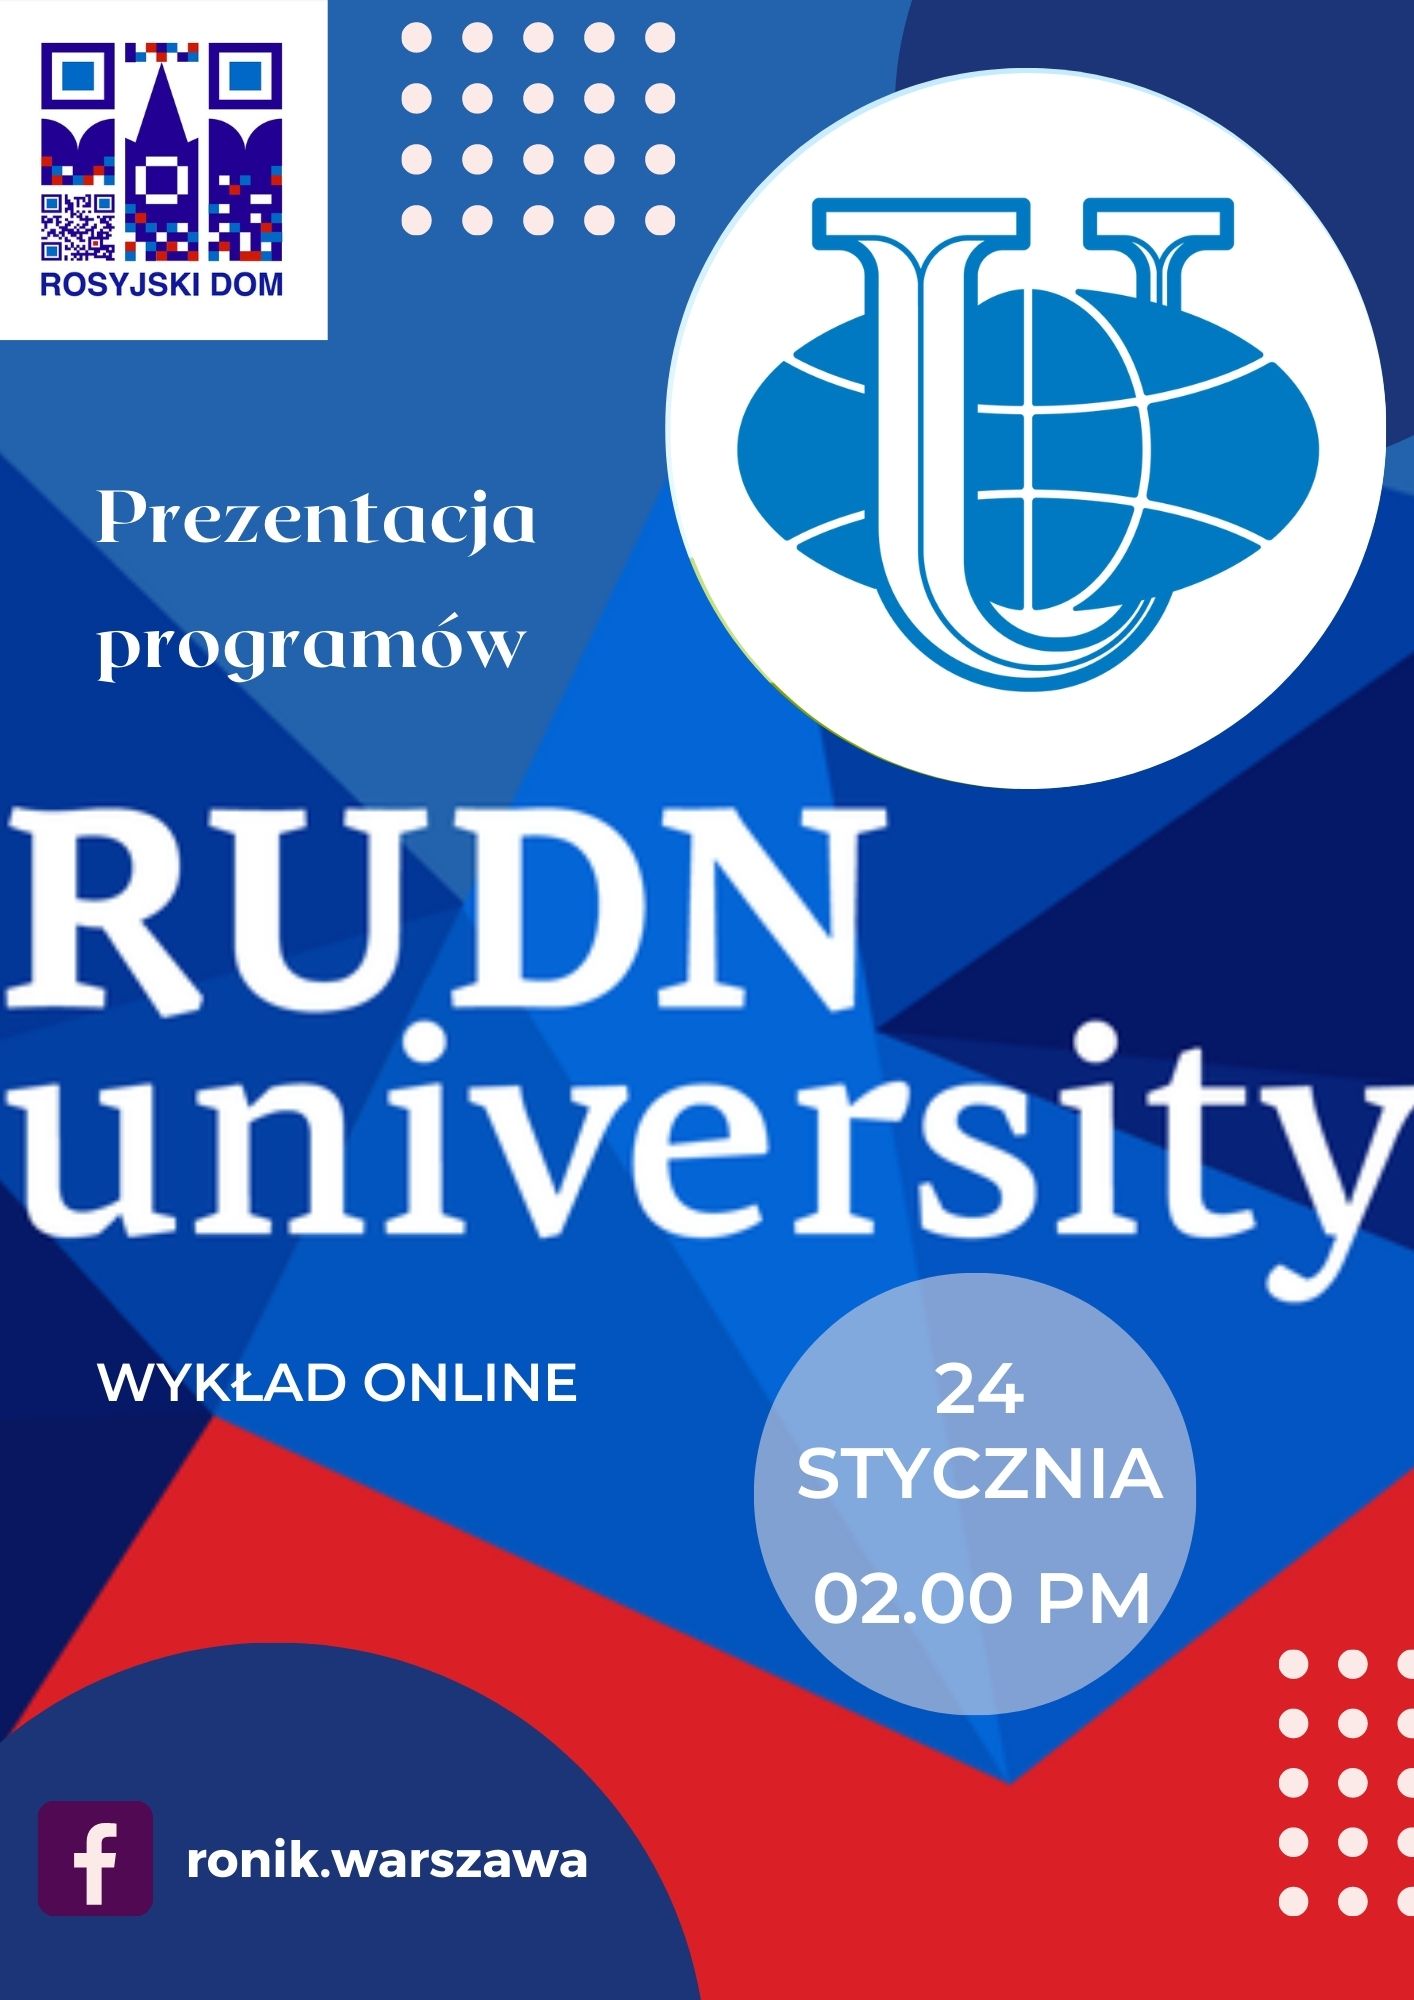 Prezentacja programów RUDN